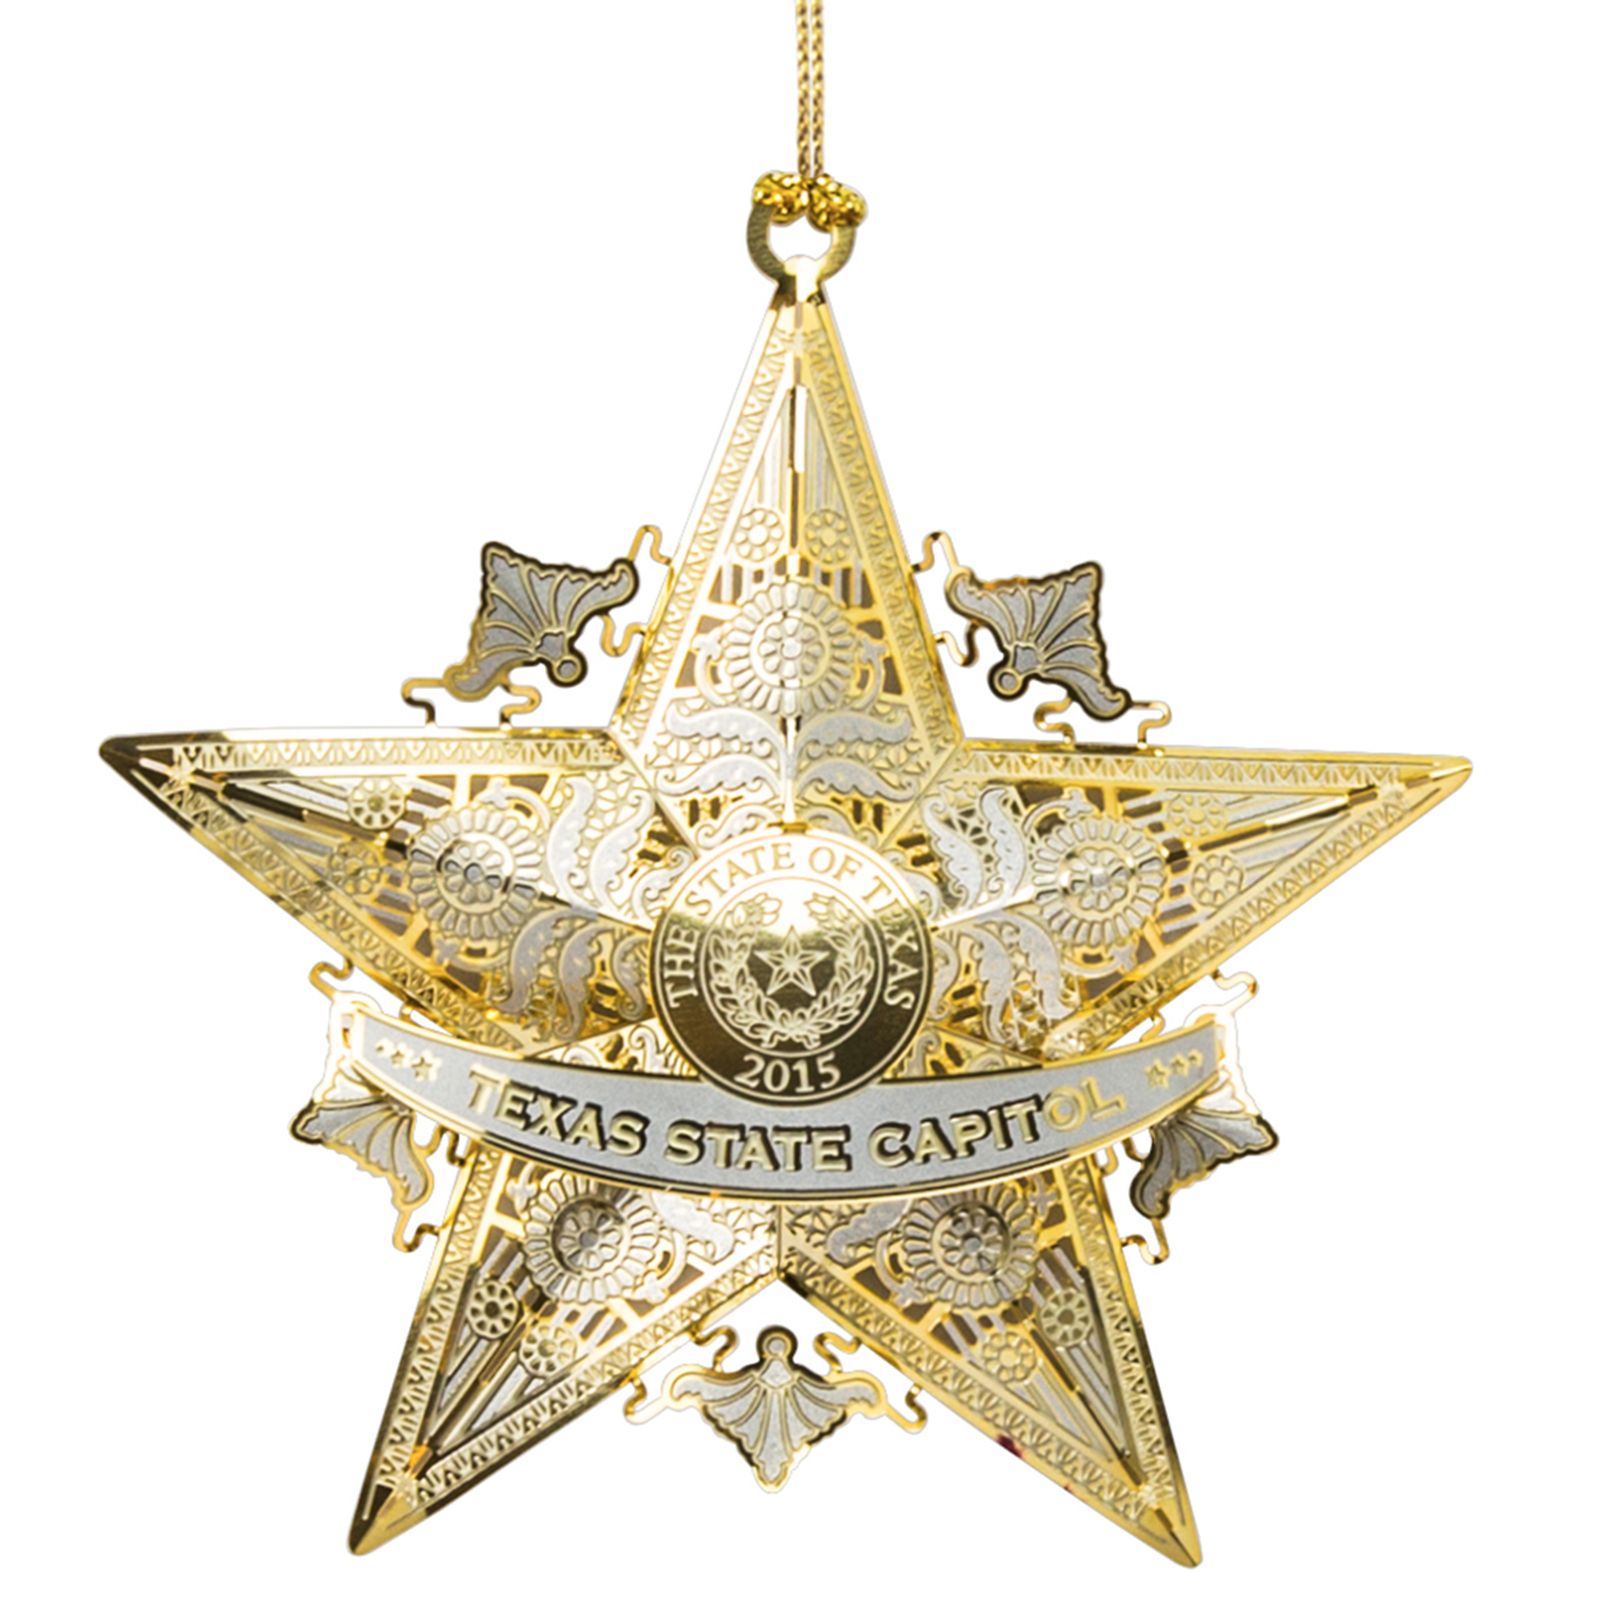 2015 Texas Capitol Ornament